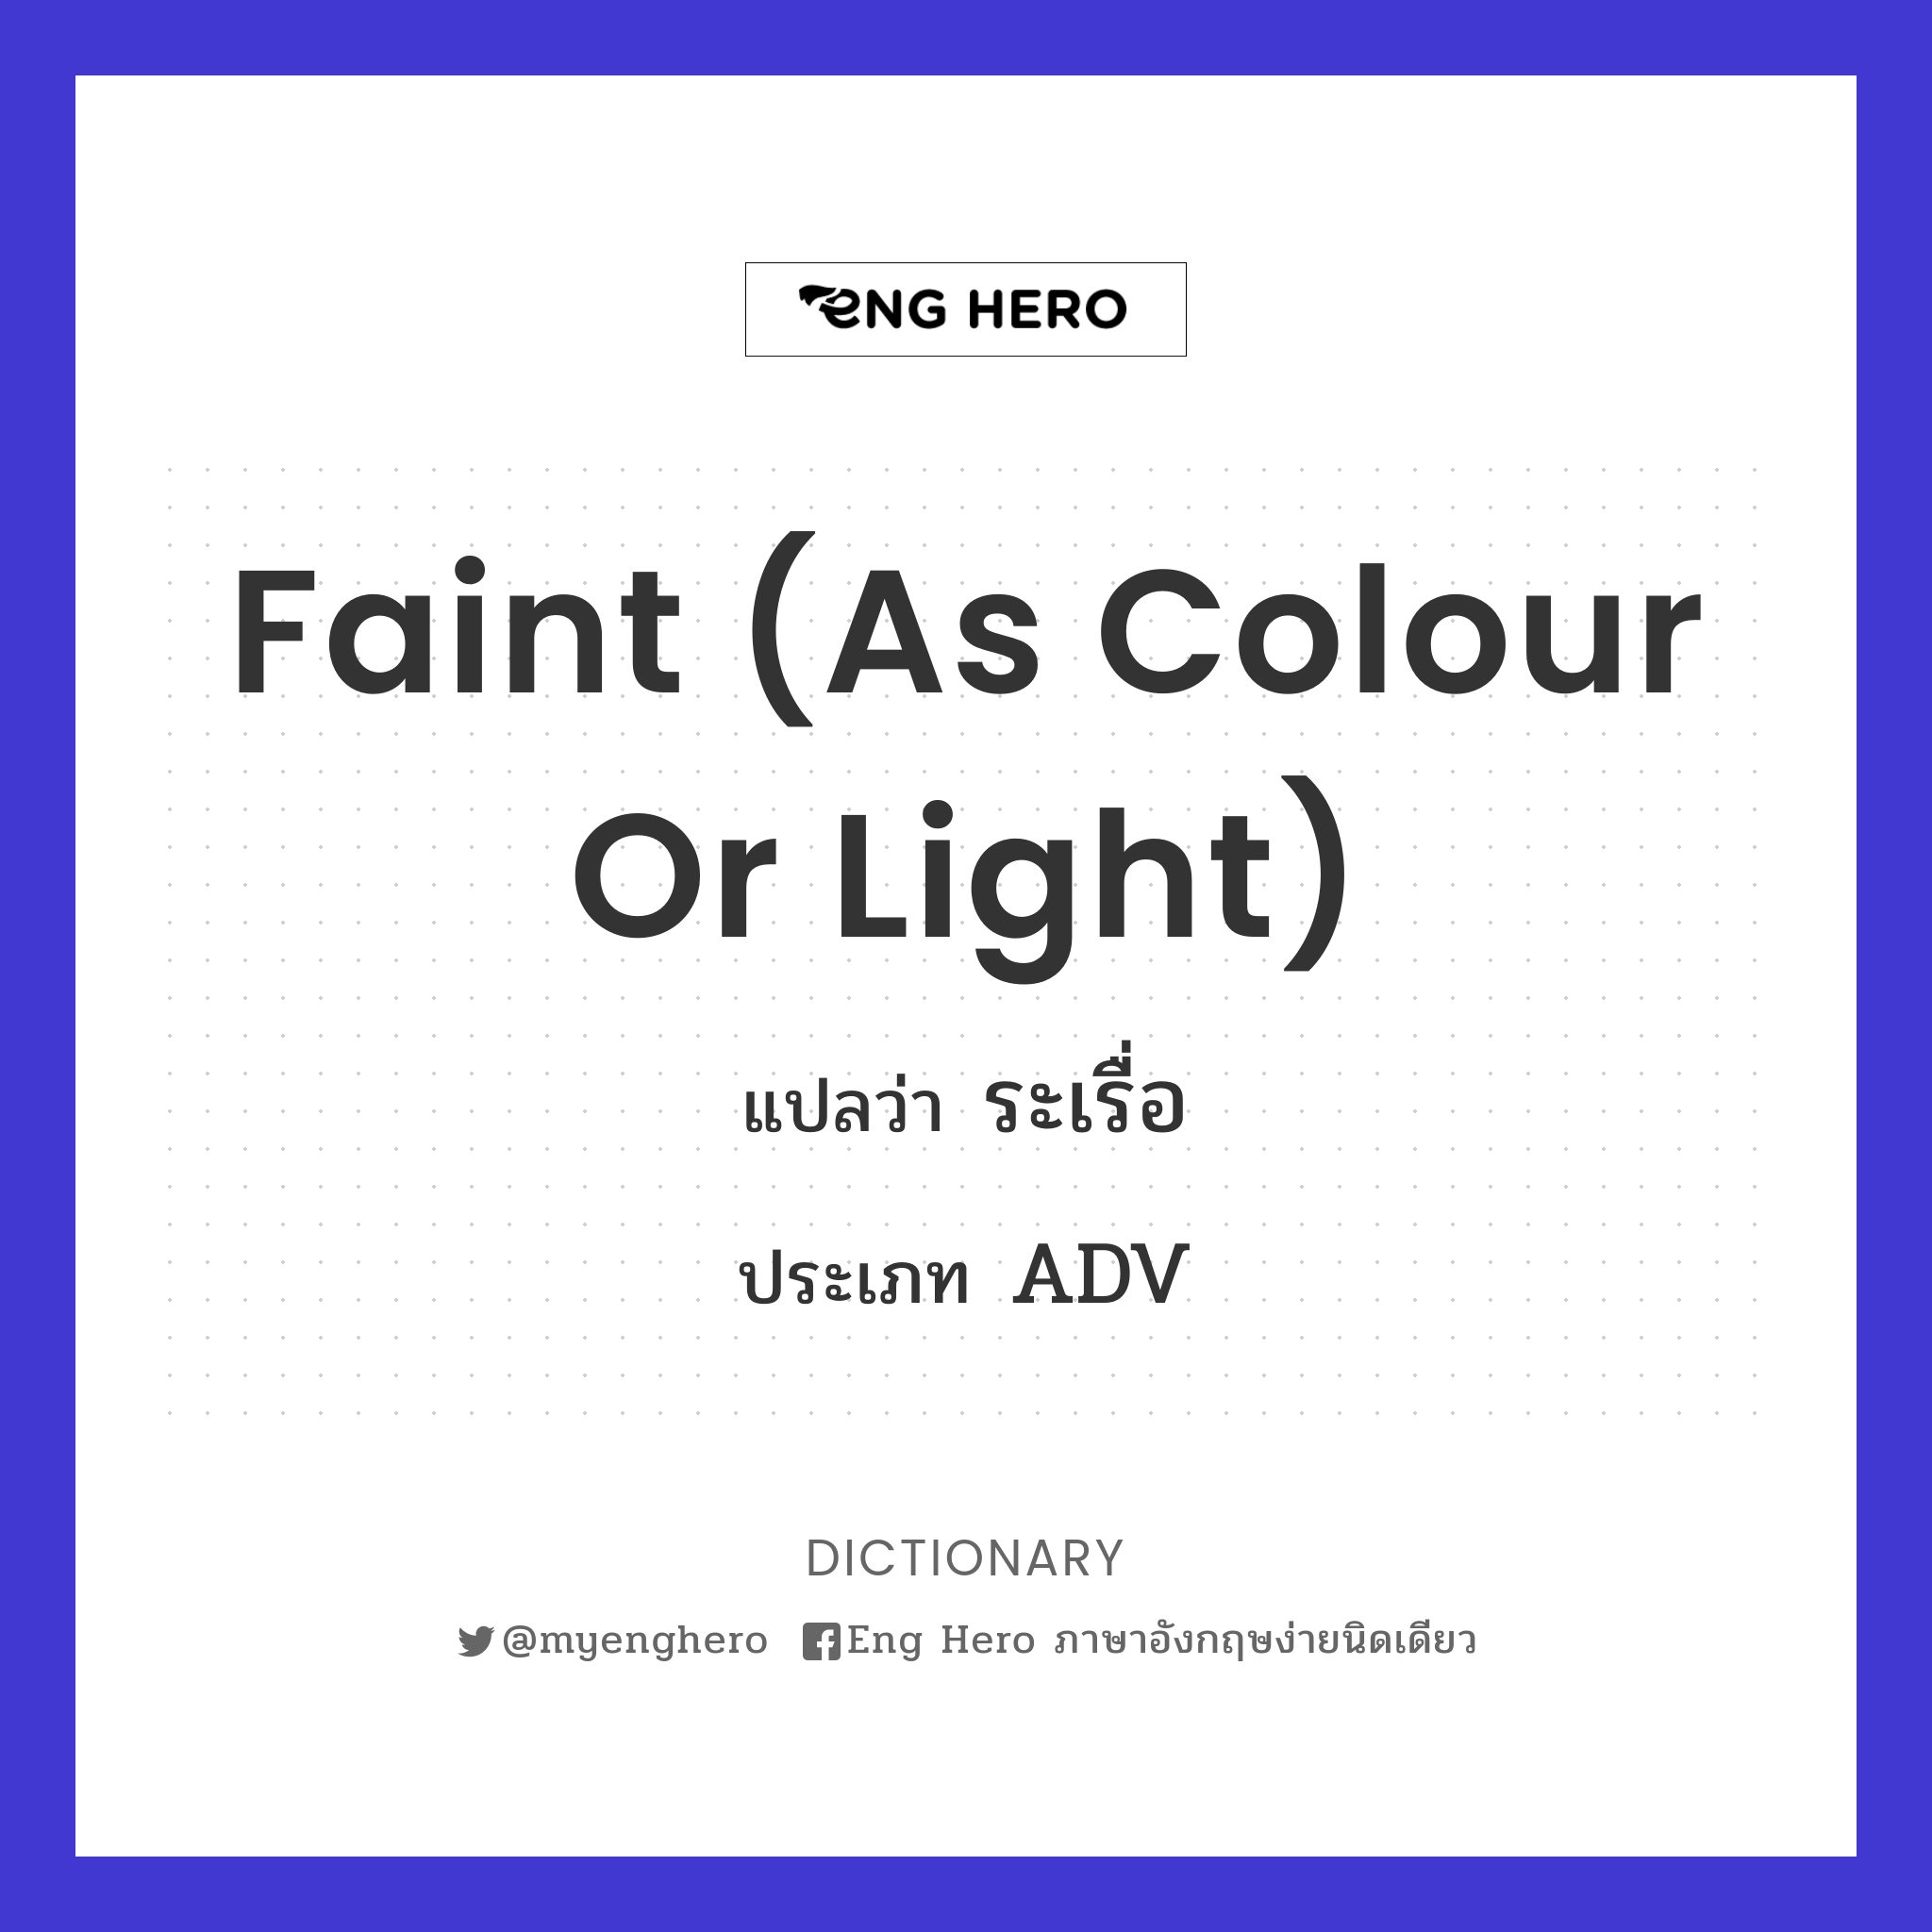 faint (as colour or light)